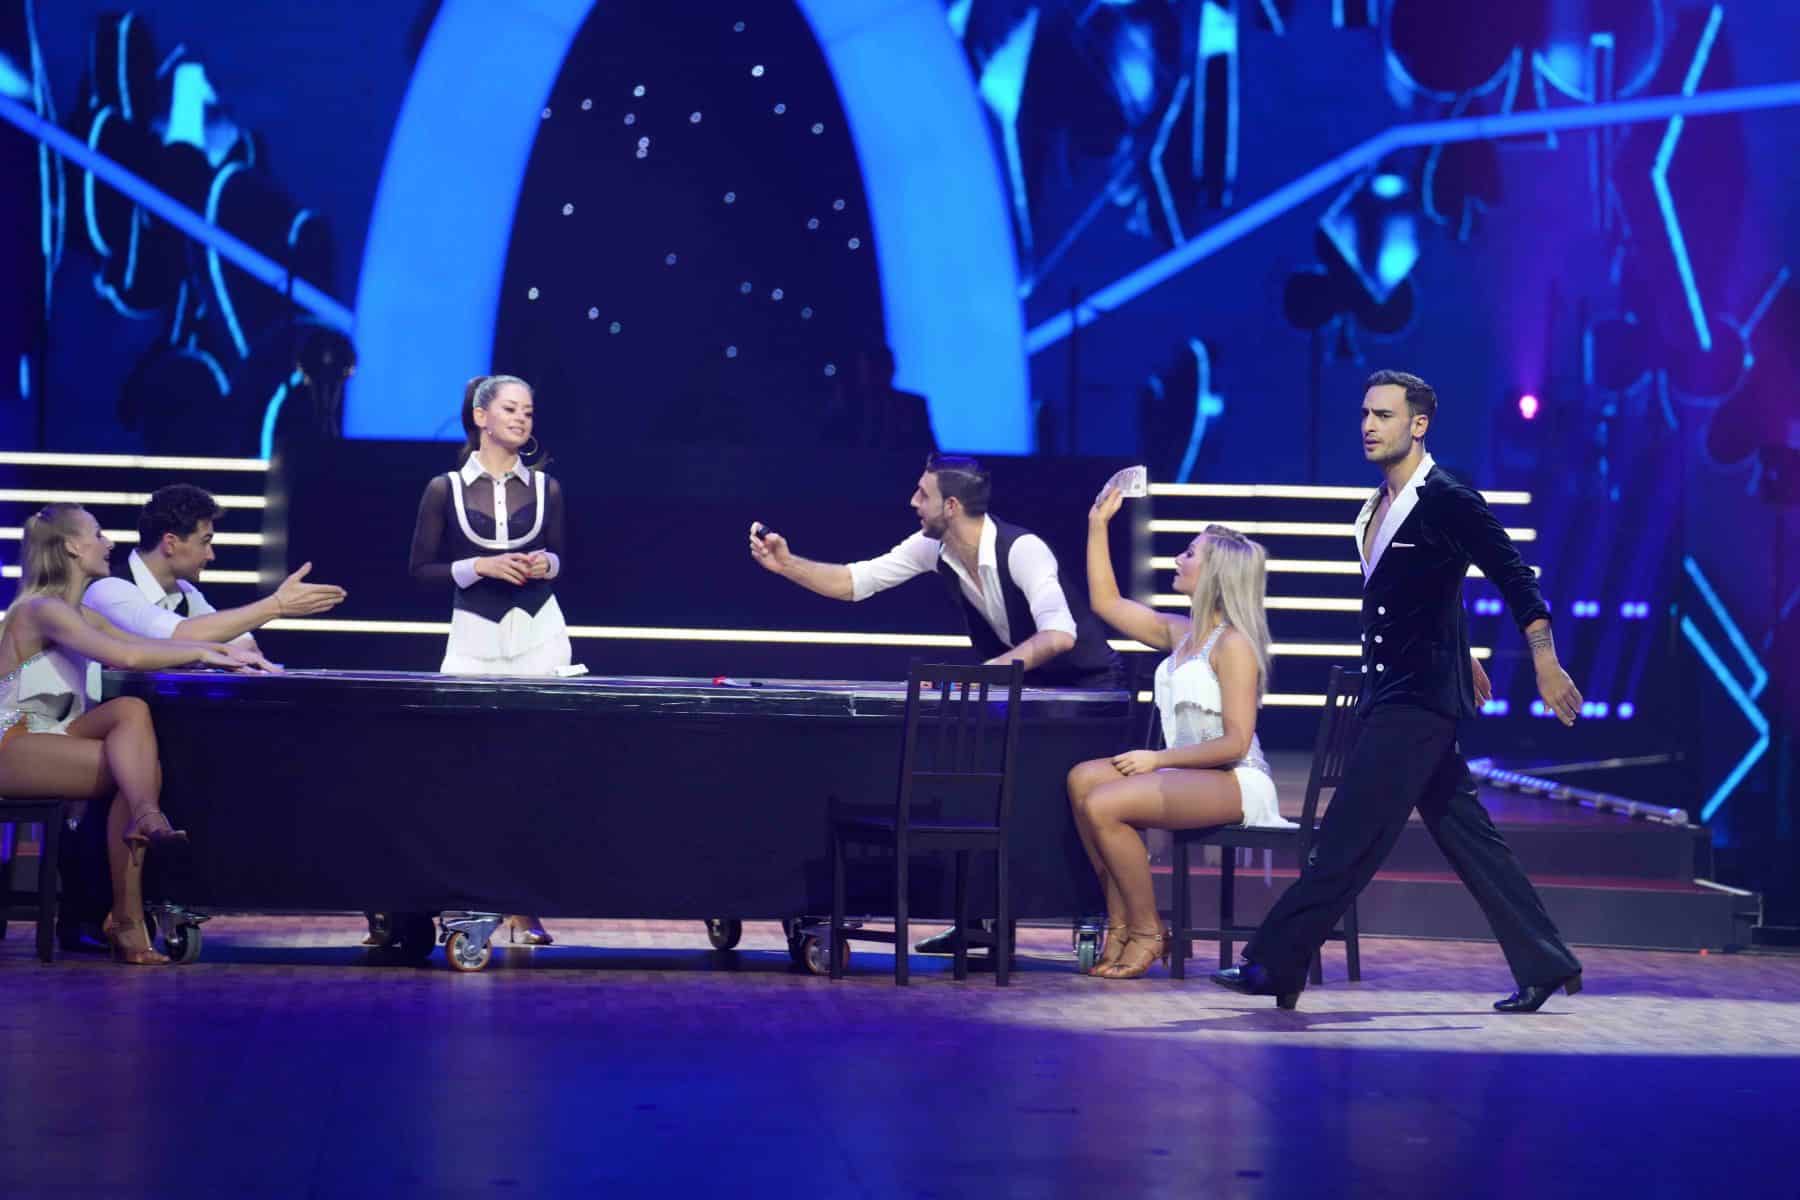 14.11.2022 Tänzerin Malika Dzumaev und Schauspieler Timur Ülker bei der Show Let s Dance - Die Live-Tournee 2022.